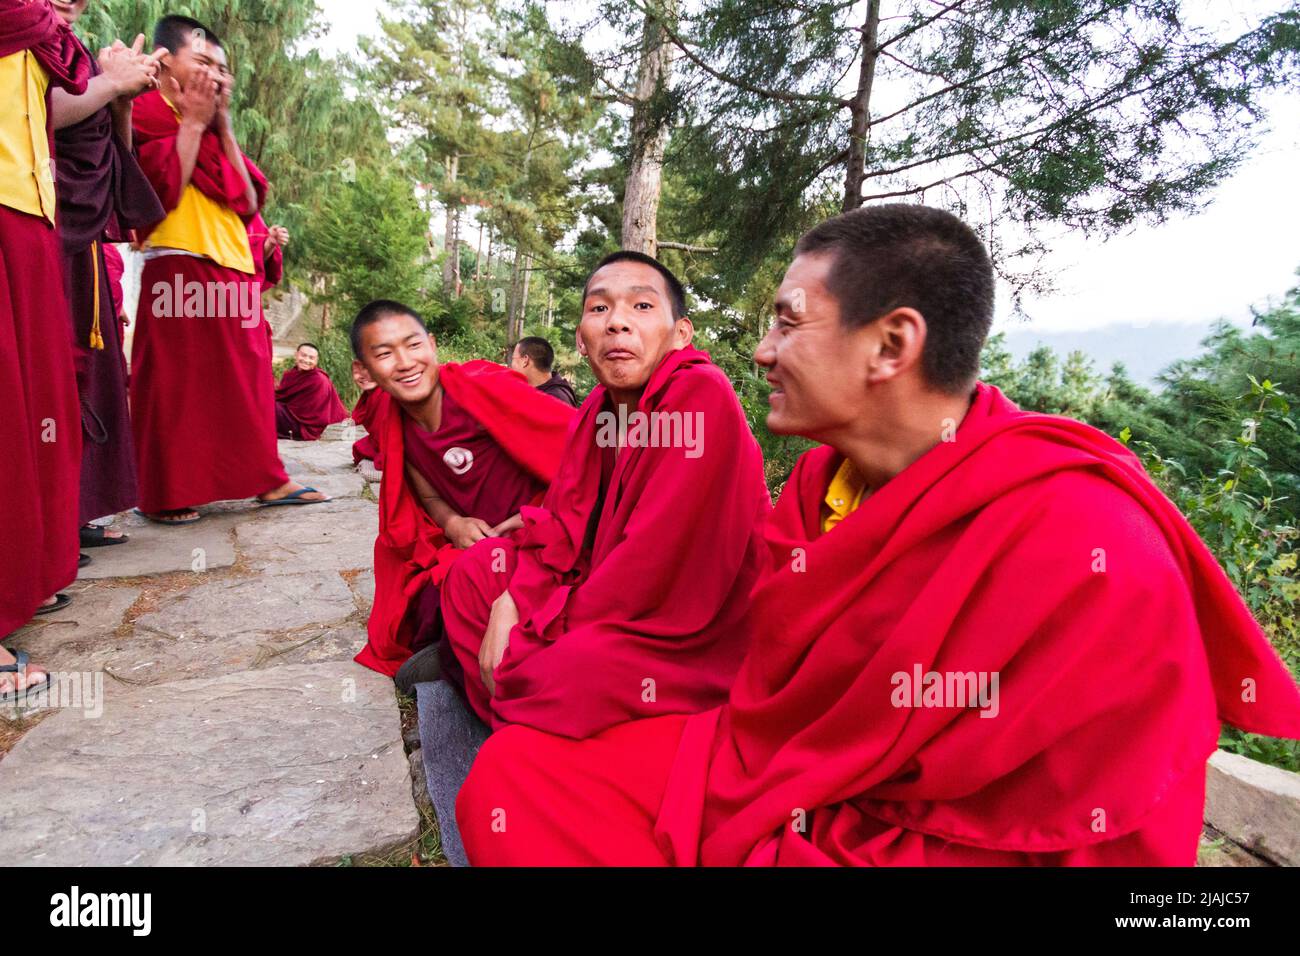 Los bhutaneses monjes budistas participar en debates filosóficos en el patio de un monasterio en Bumthang, Bhután Foto de stock